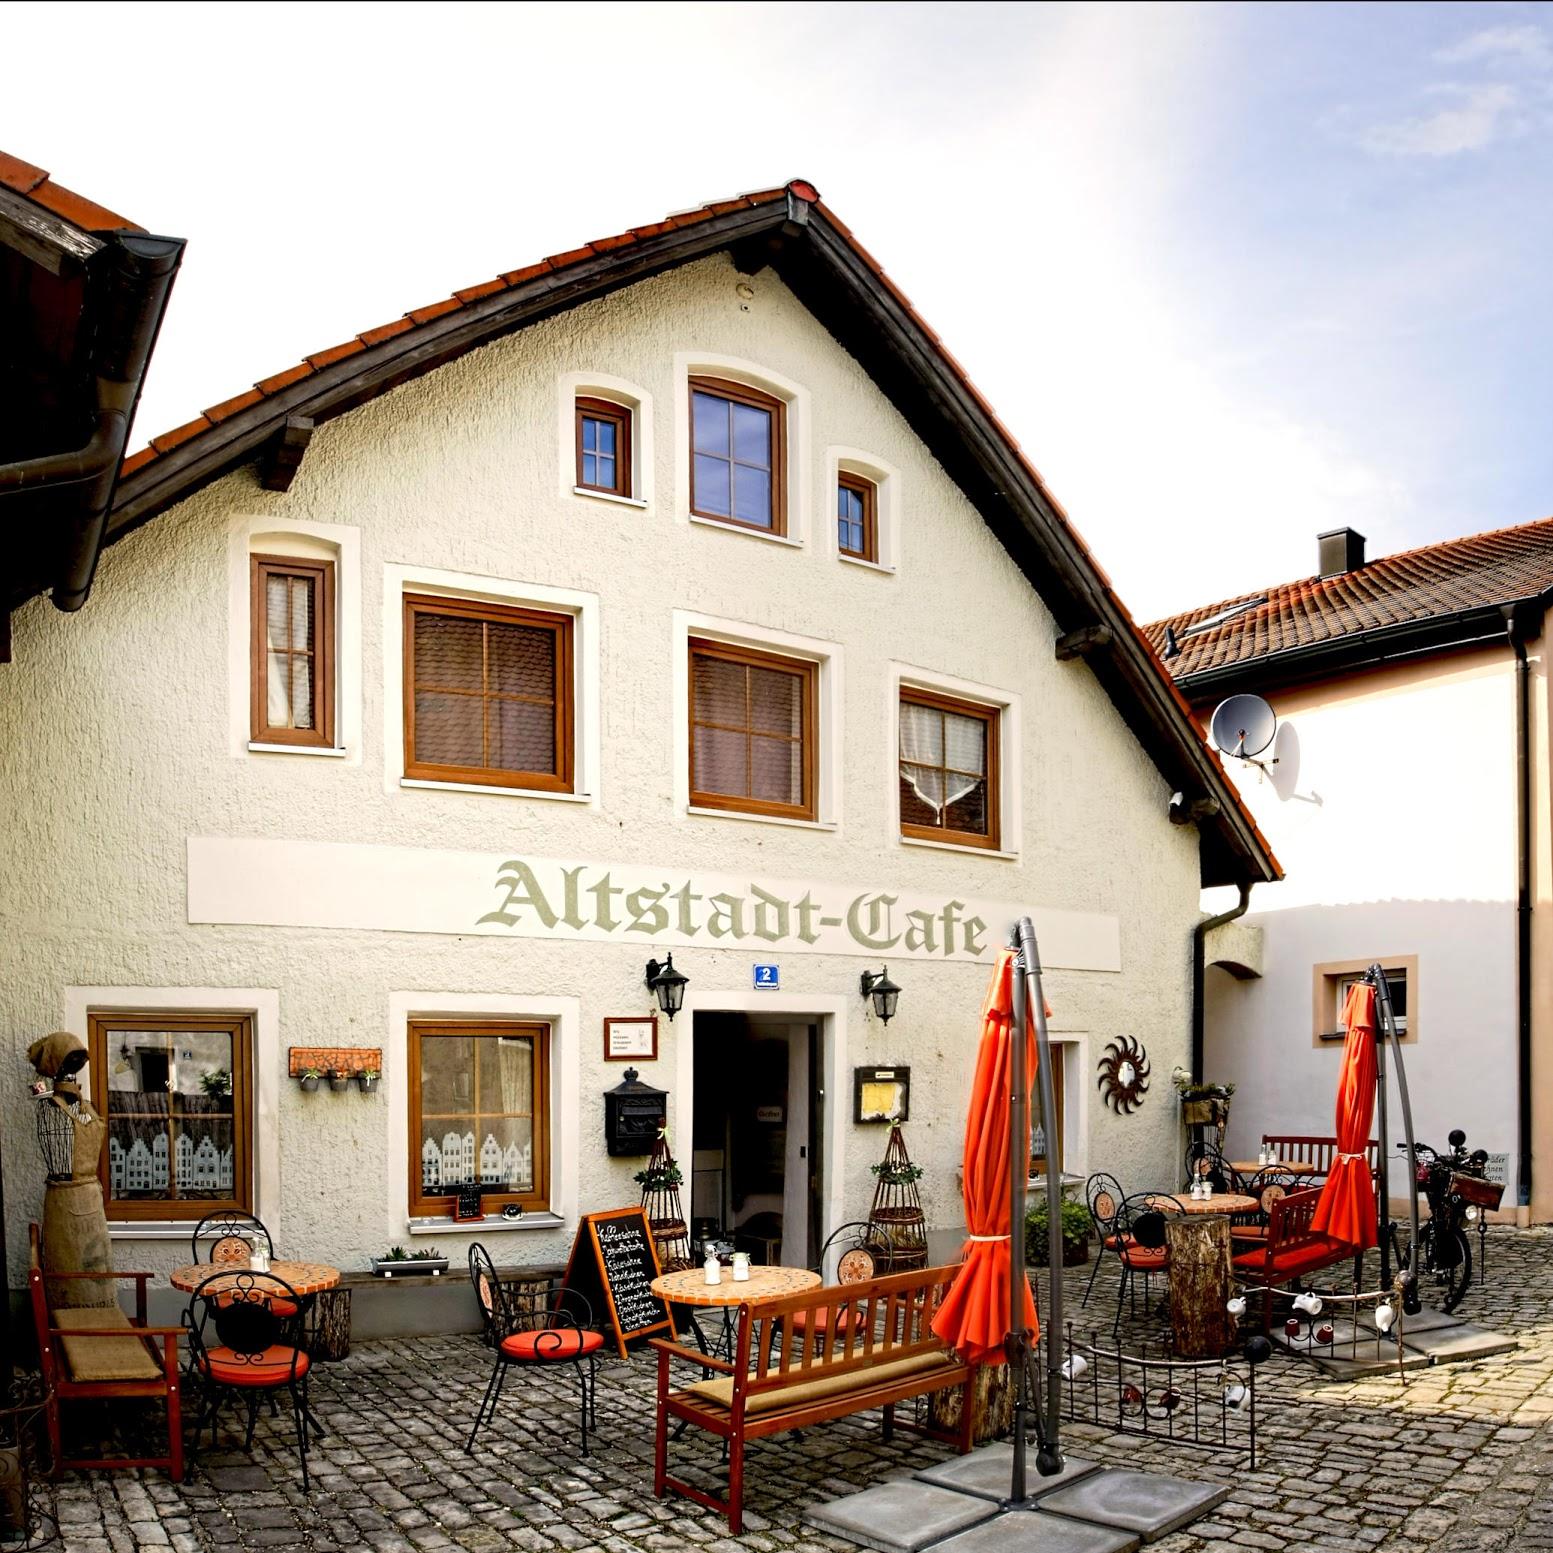 Restaurant "Altstadtcafe" in Beilngries